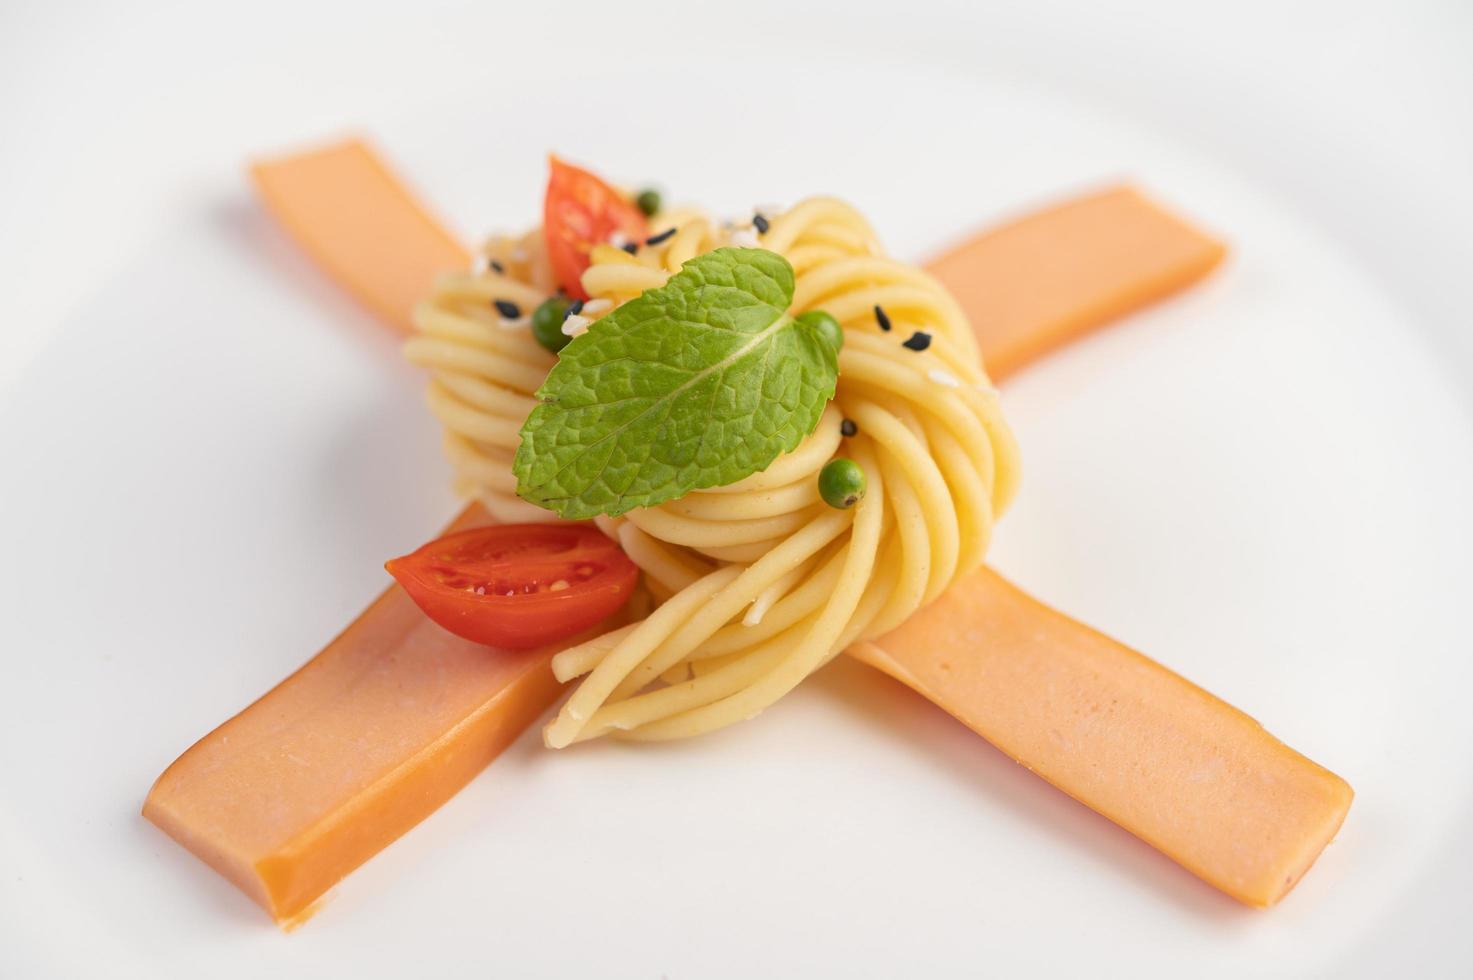 espaguetis gourmet bellamente dispuestos en un plato blanco foto